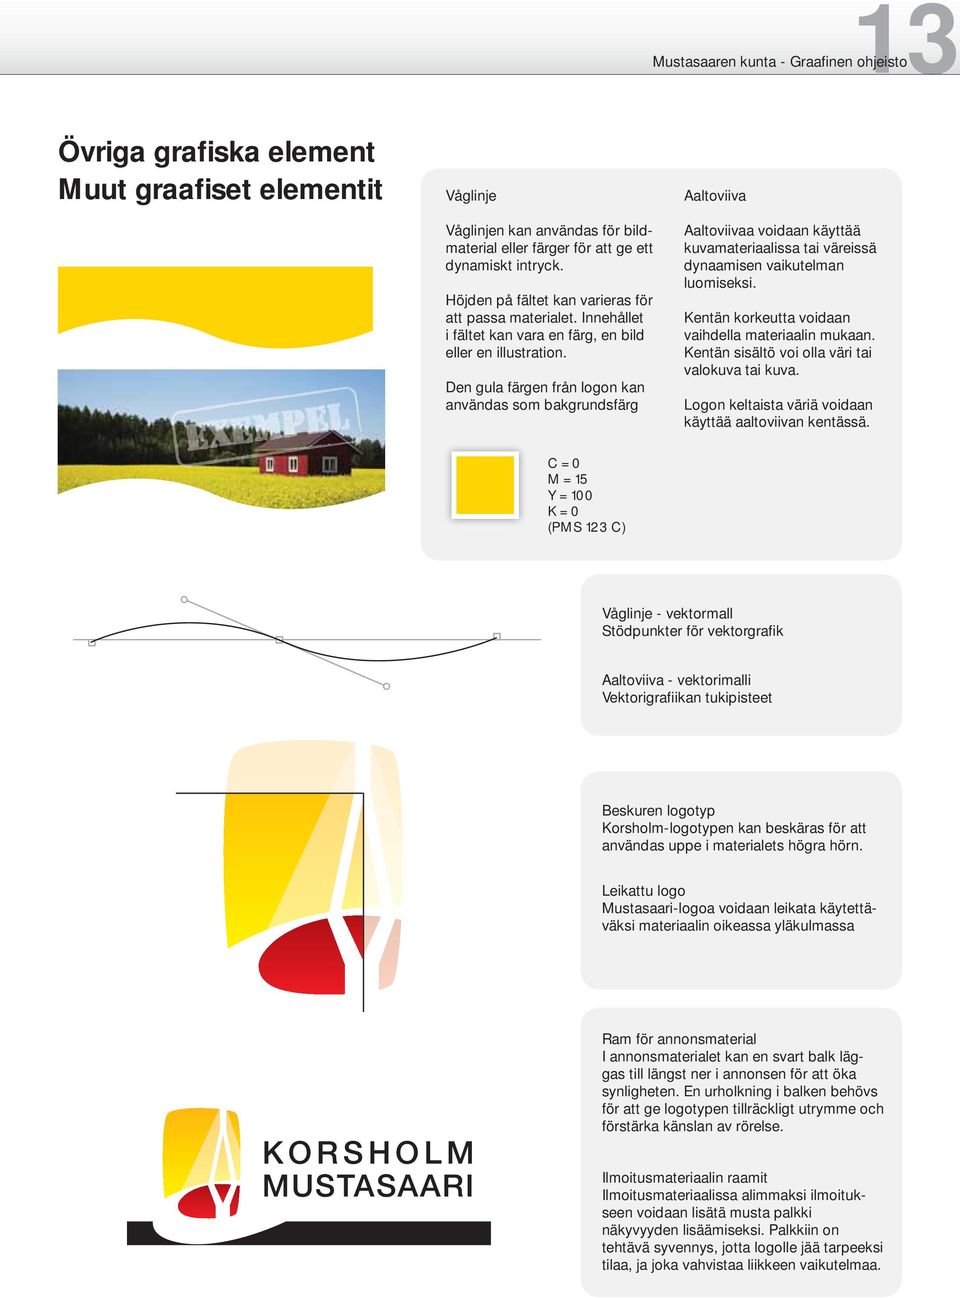 Den gula färgen från logon kan användas som bakgrundsfärg Aaltoviivaa voidaan käyttää kuvamateriaalissa tai väreissä dynaamisen vaikutelman luomiseksi.